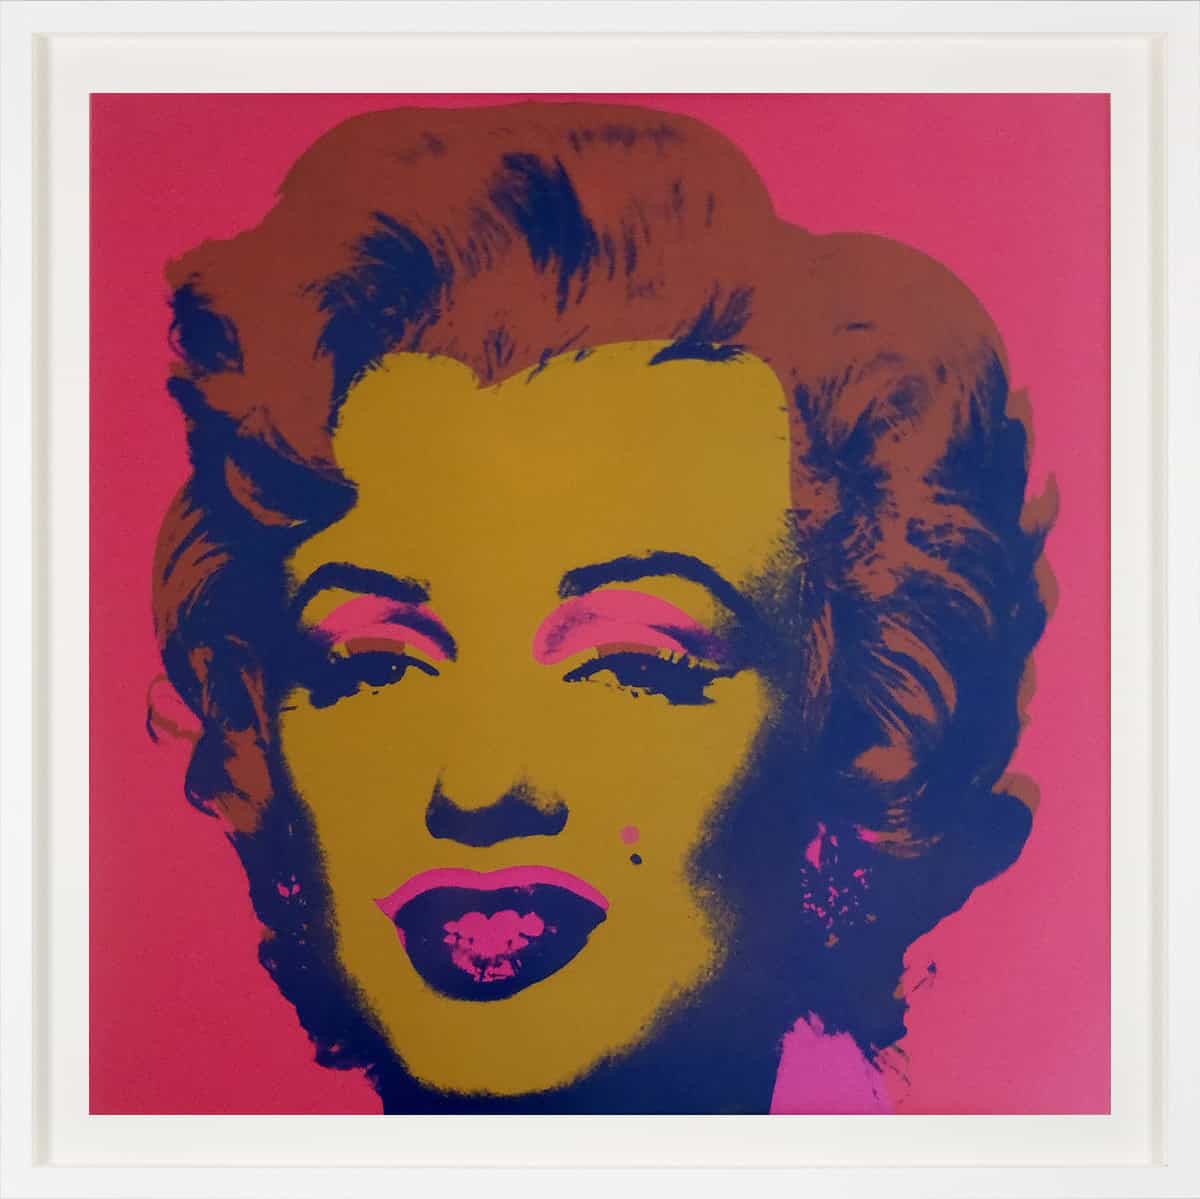 Andy Warhol, Marilyn Monroe (Marilyn), 1967 FS 27, Screen Print